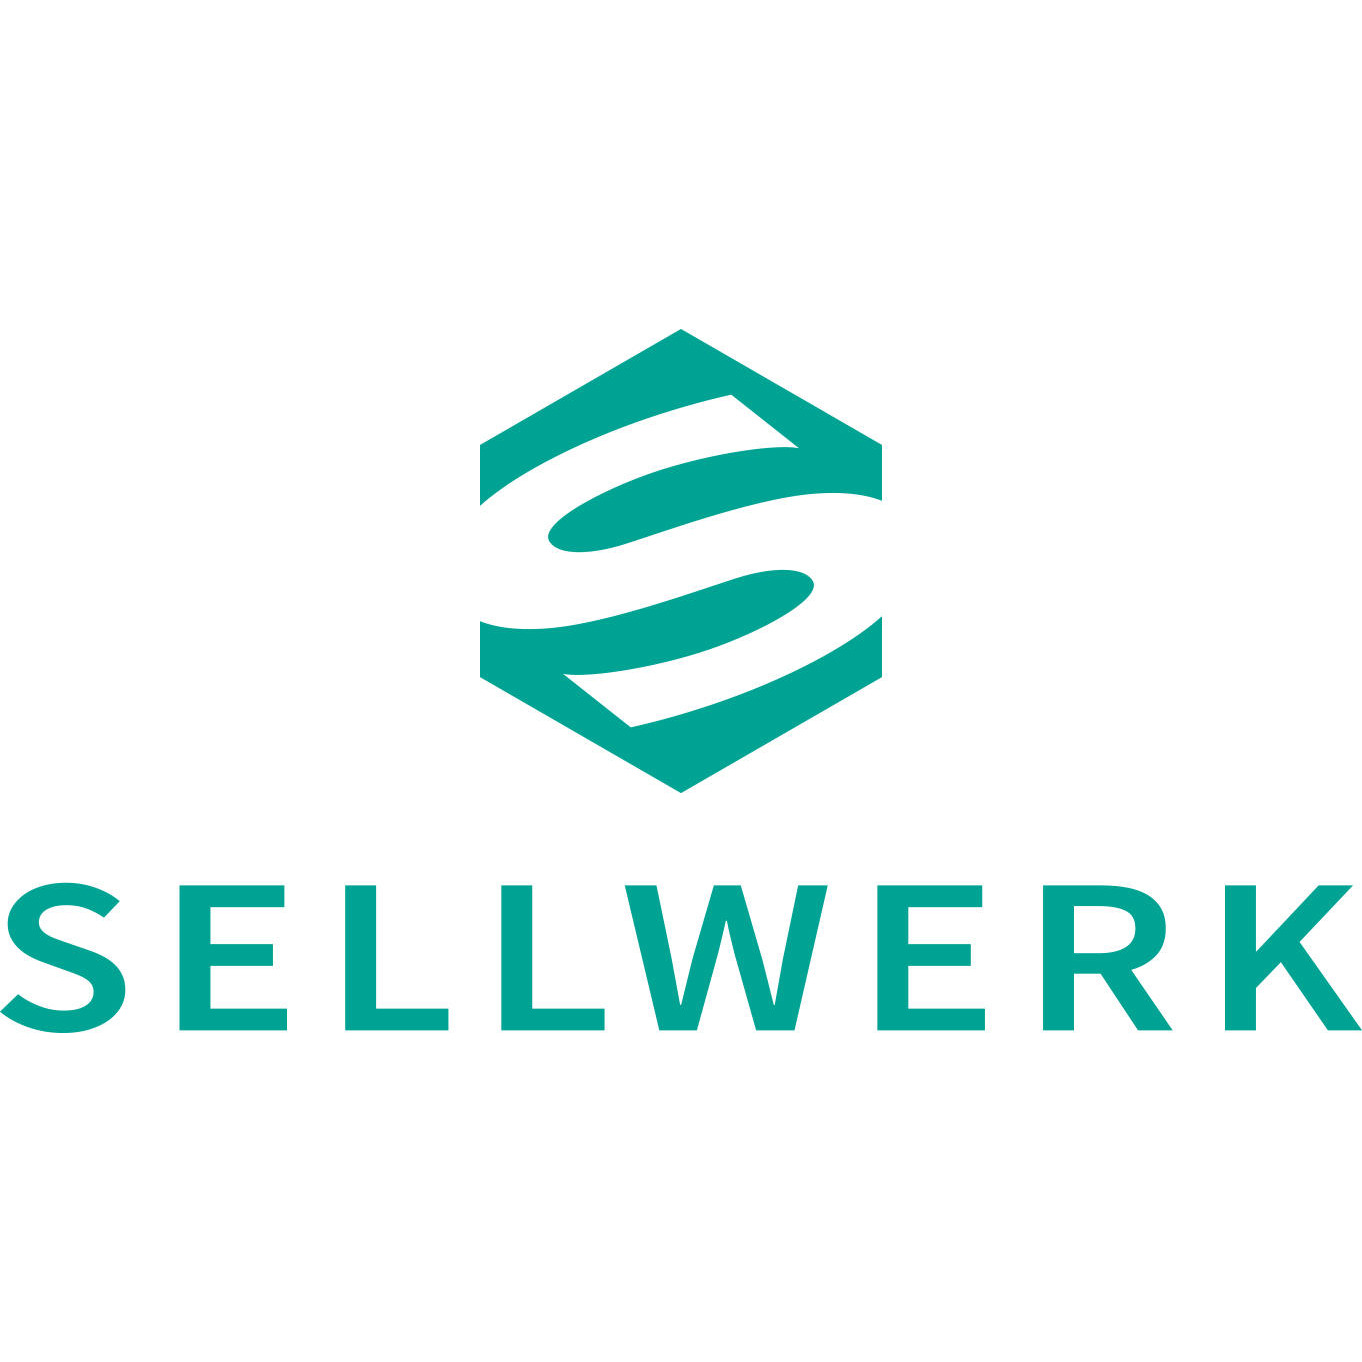 SELLWERK - Schwann Verlag KG in Düsseldorf - Logo